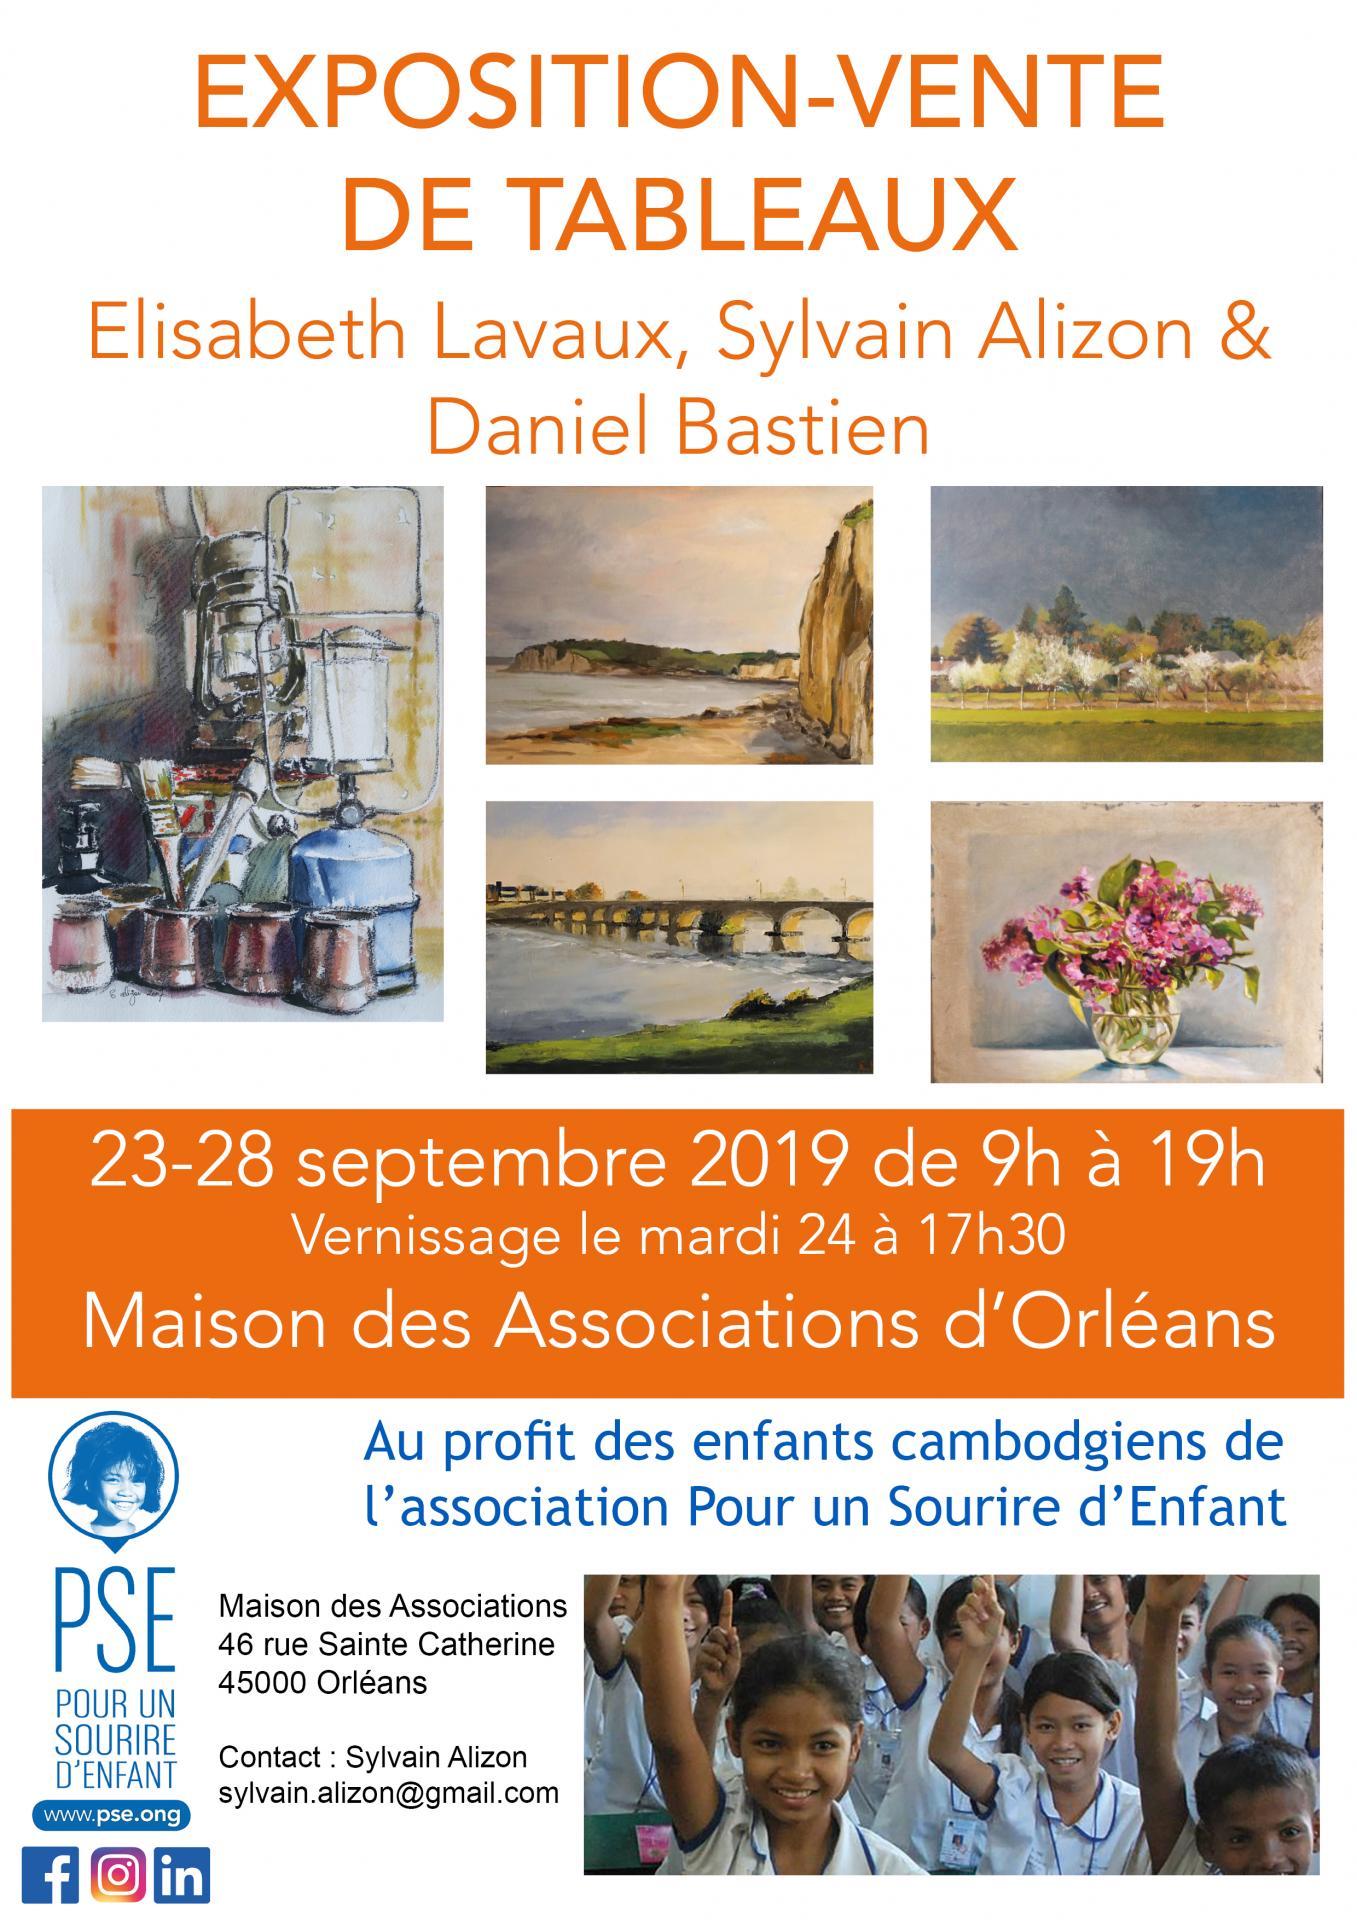 Affiche de l'expo-vente de tableaux à Orléans en septembre 2019